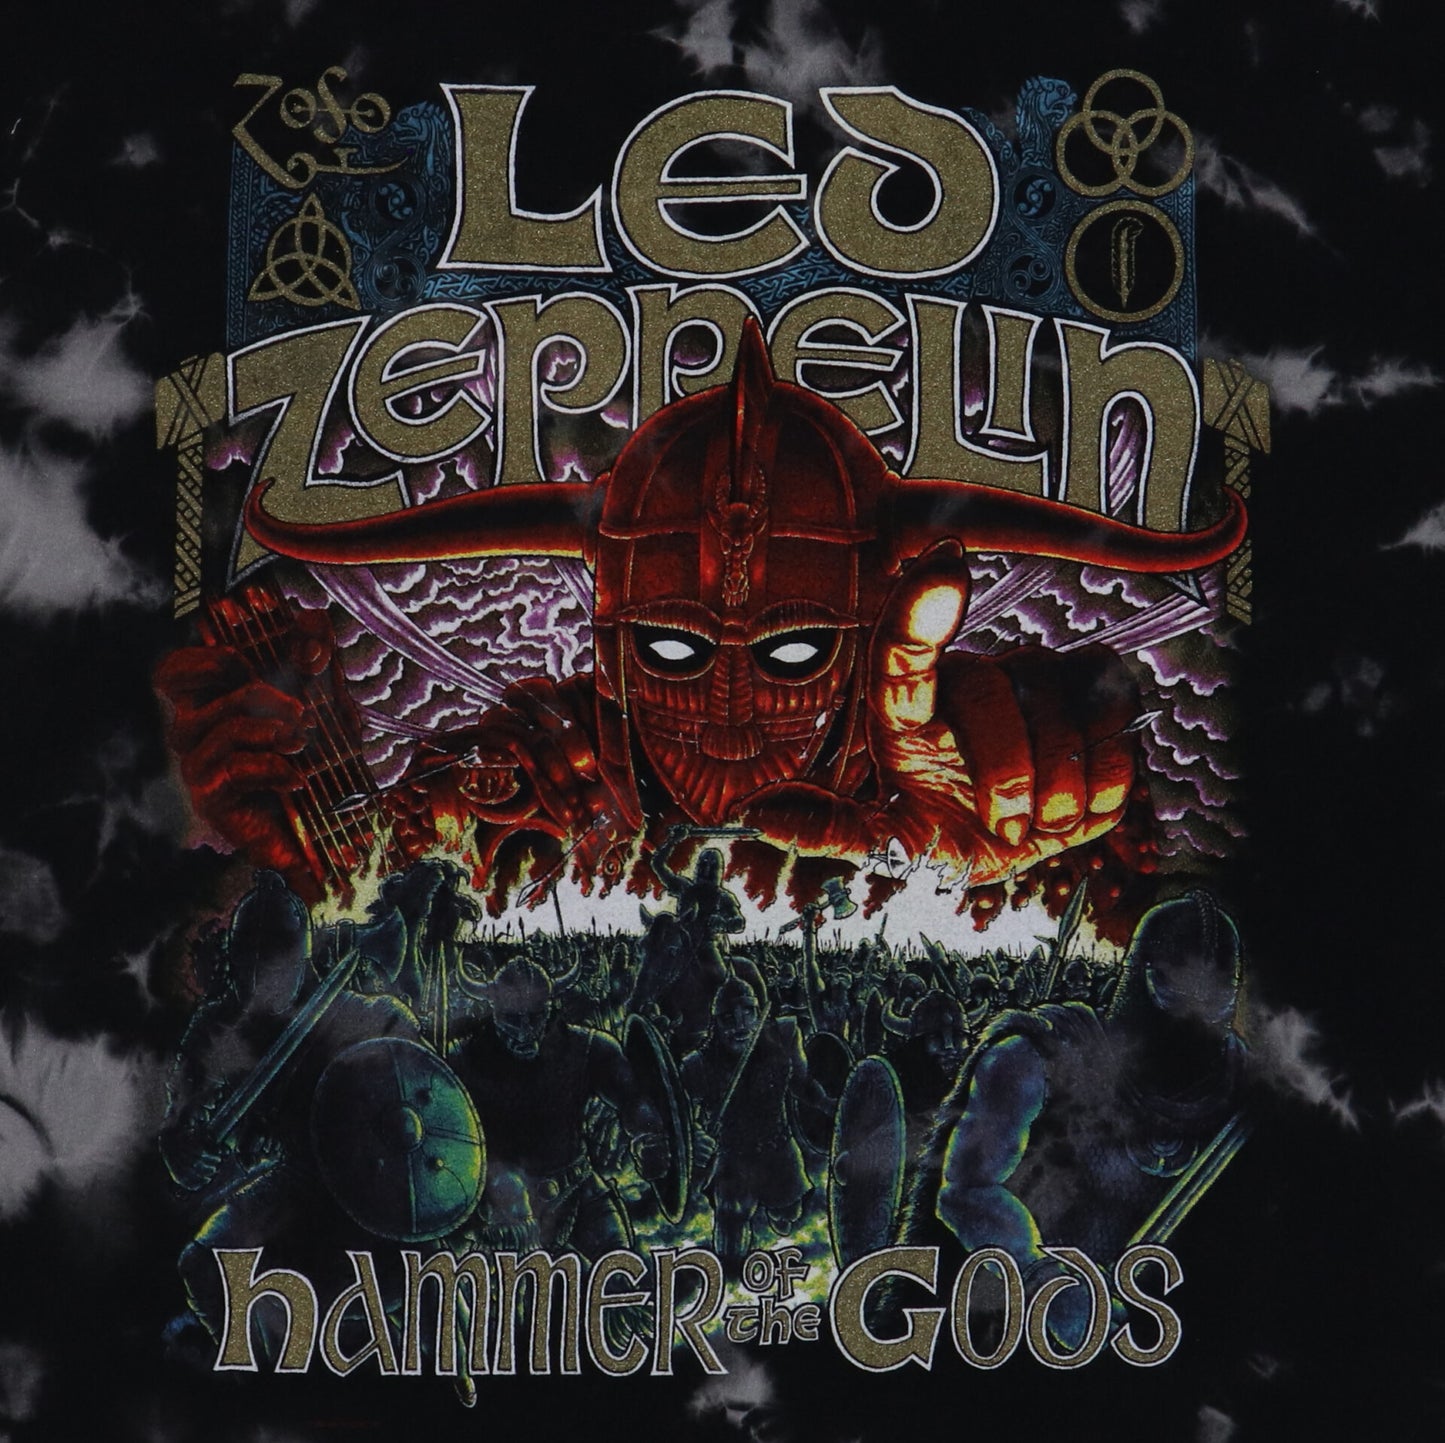 1999 Led Zeppelin Hammer Of The Gods Shirt